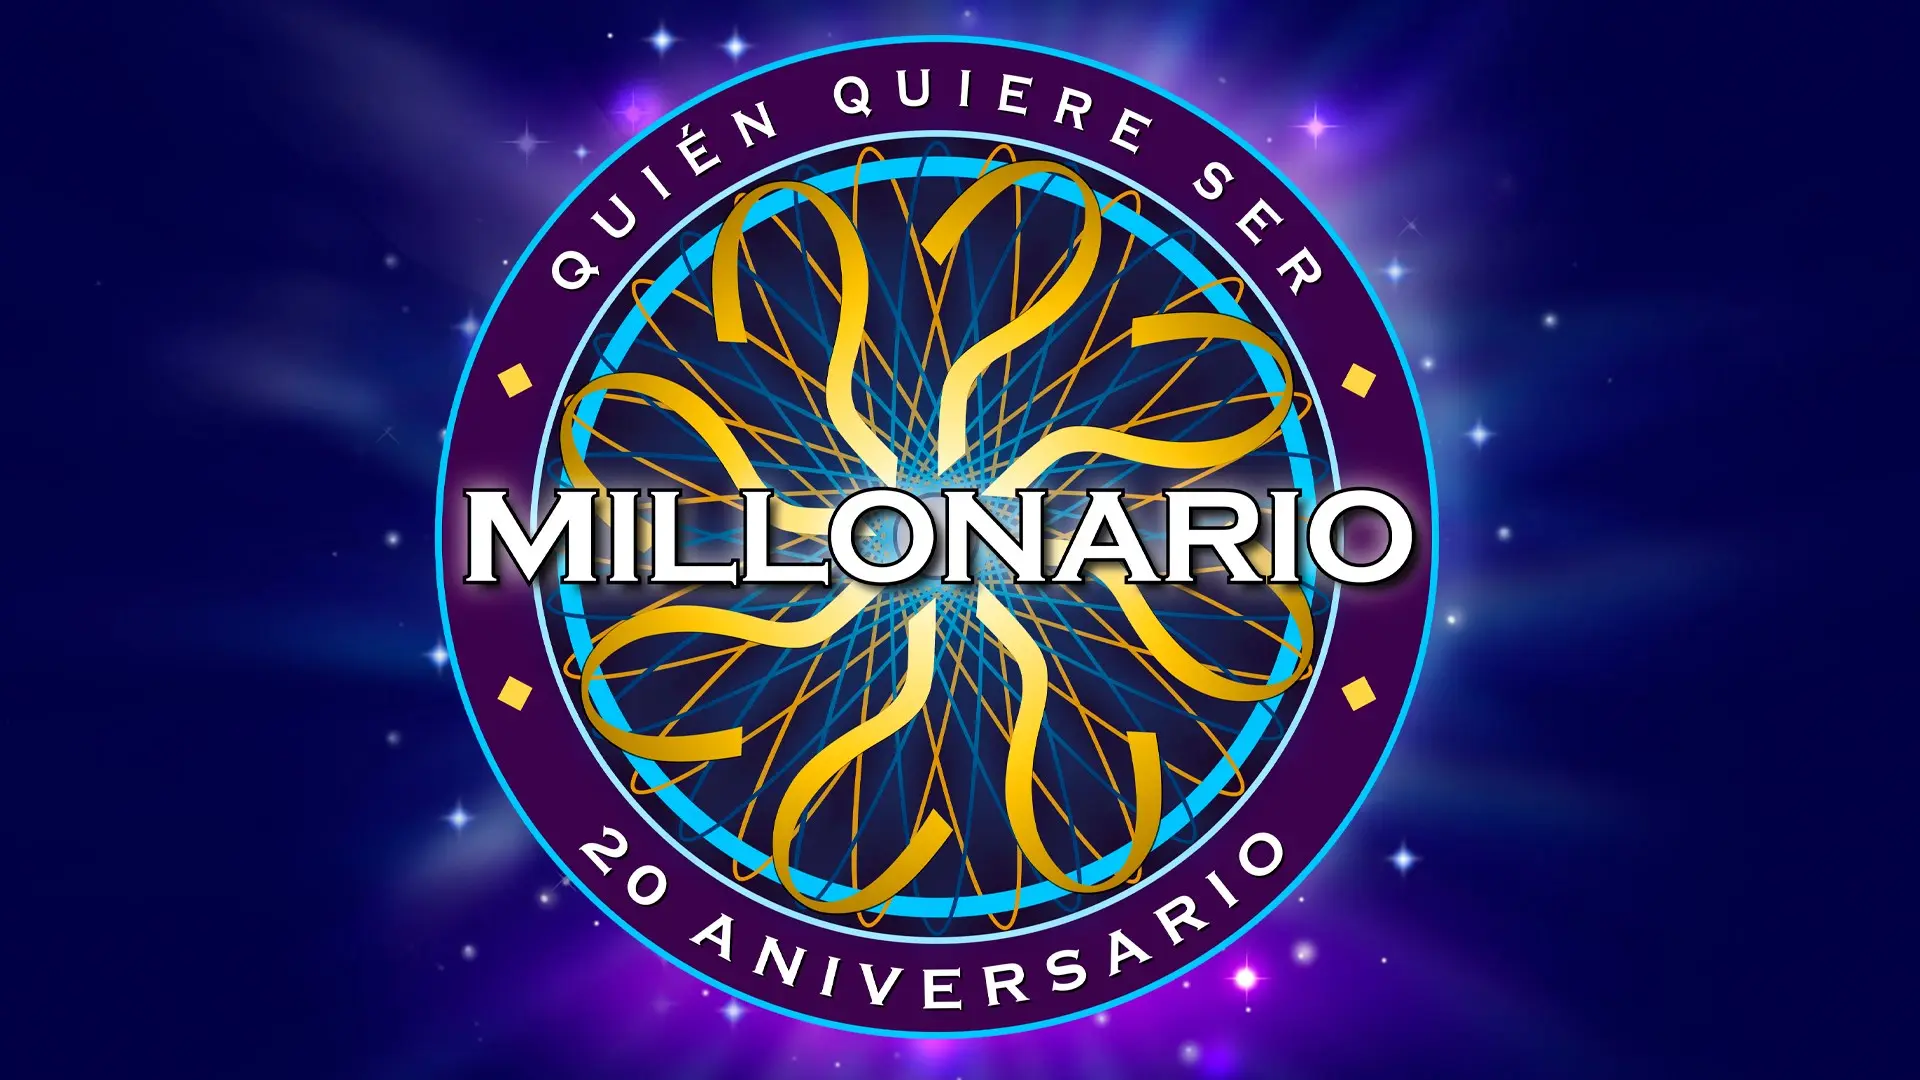 quien quiere ser millonario juego online latino - Cómo se llama el juego de quiero ser millonario